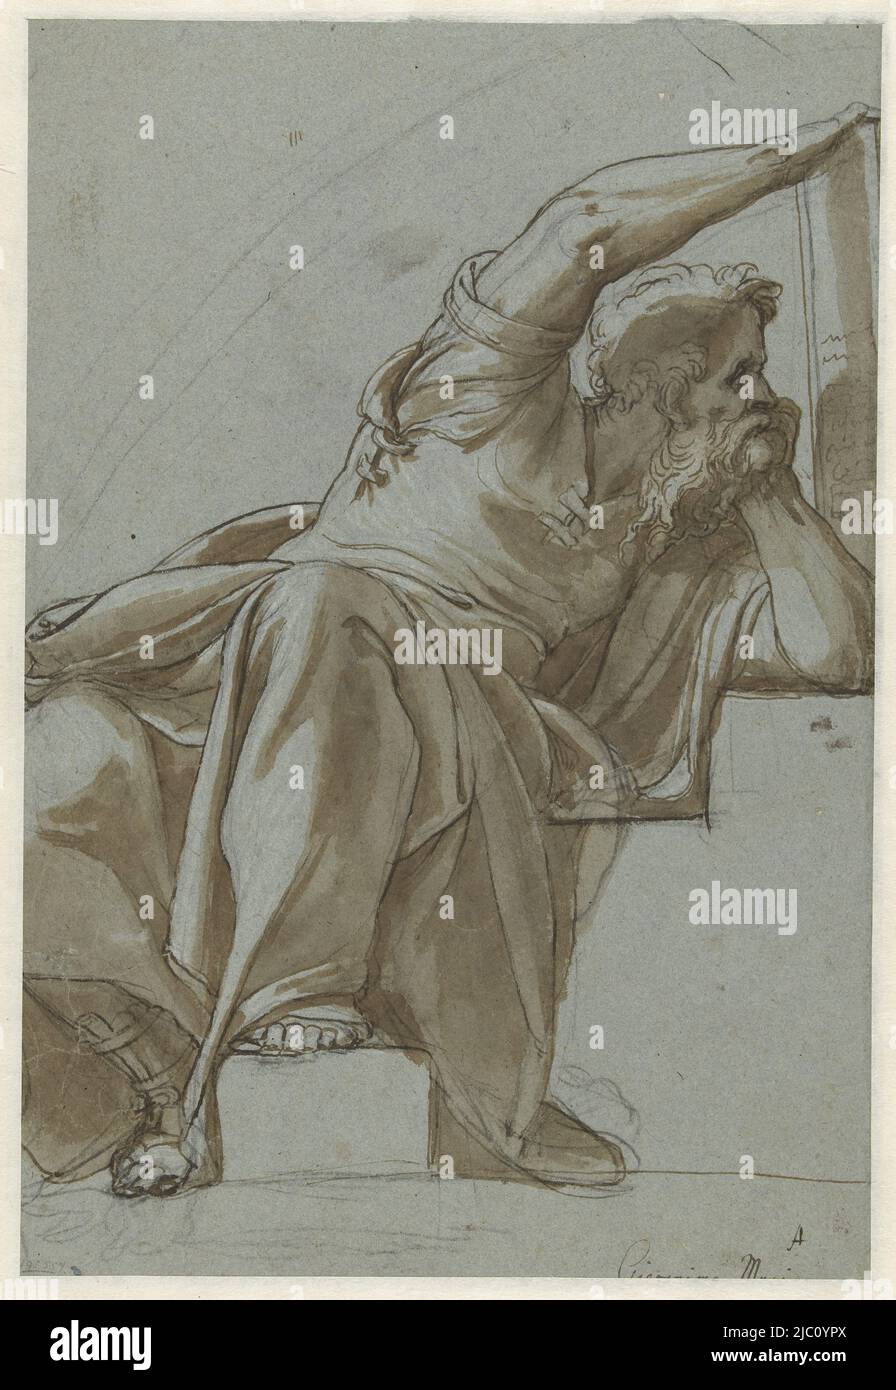 Skizze für eine Lünette, sitzende Mannsfigur (Prophet?), Zeichner: Girolamo Muziano, 1549 - 1555, Papier, Stift, Bürste, H 372 mm × B 255 mm Stockfoto